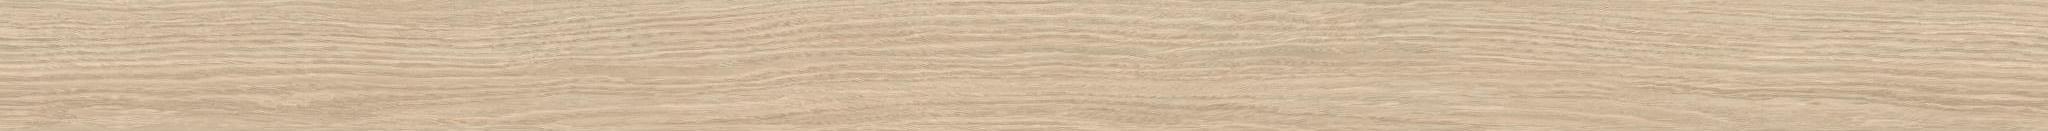 TSFC016 in natural oak furniture board